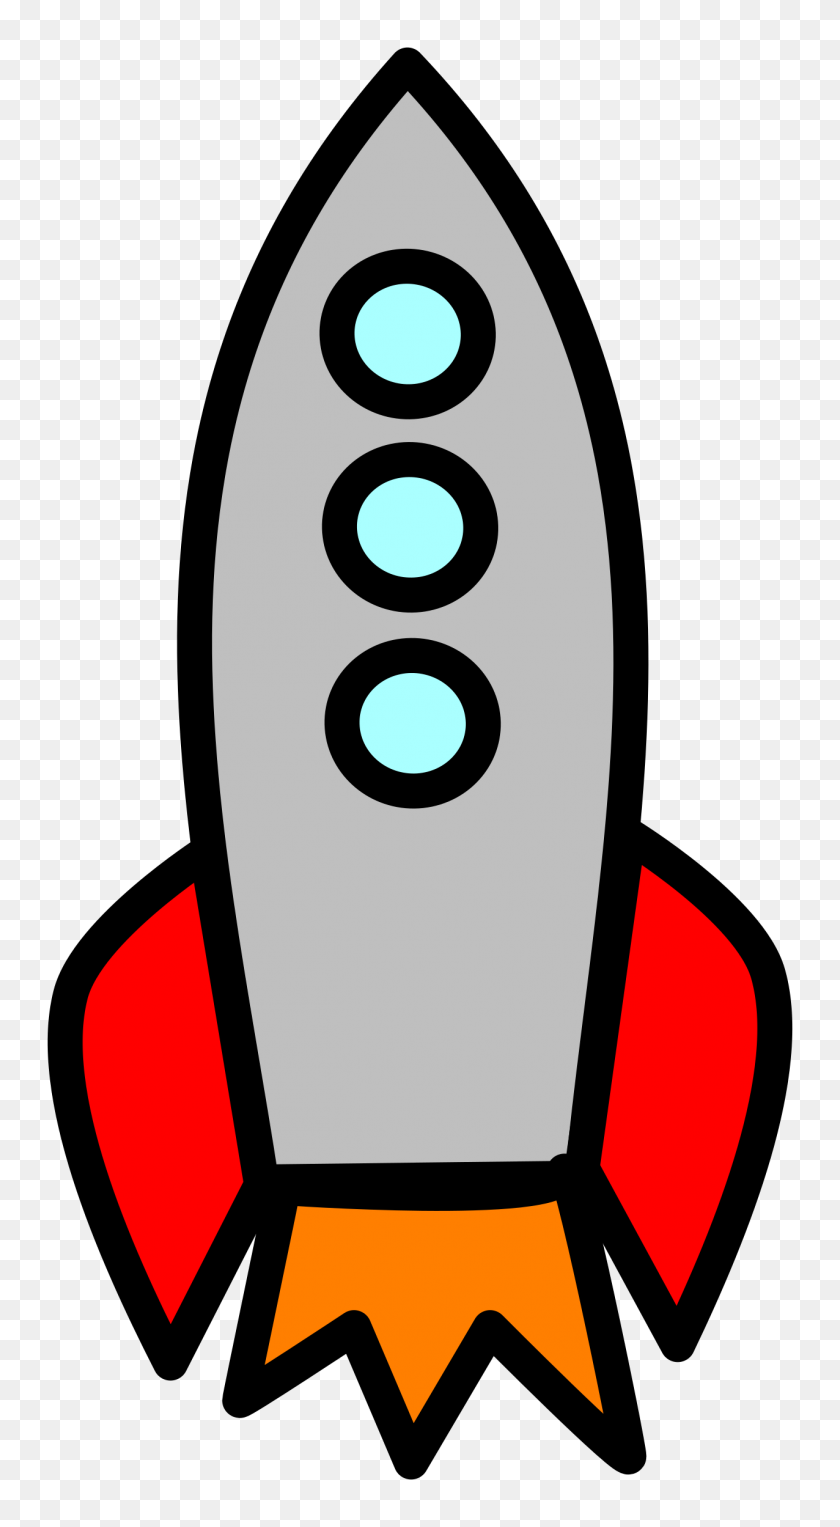 1276x2400 Kisscc0 Rocket De La Nave Espacial Vehículo De Lanzamiento De Refuerzo Exterior Del Arco Iris Spa - Spa Imágenes Libres